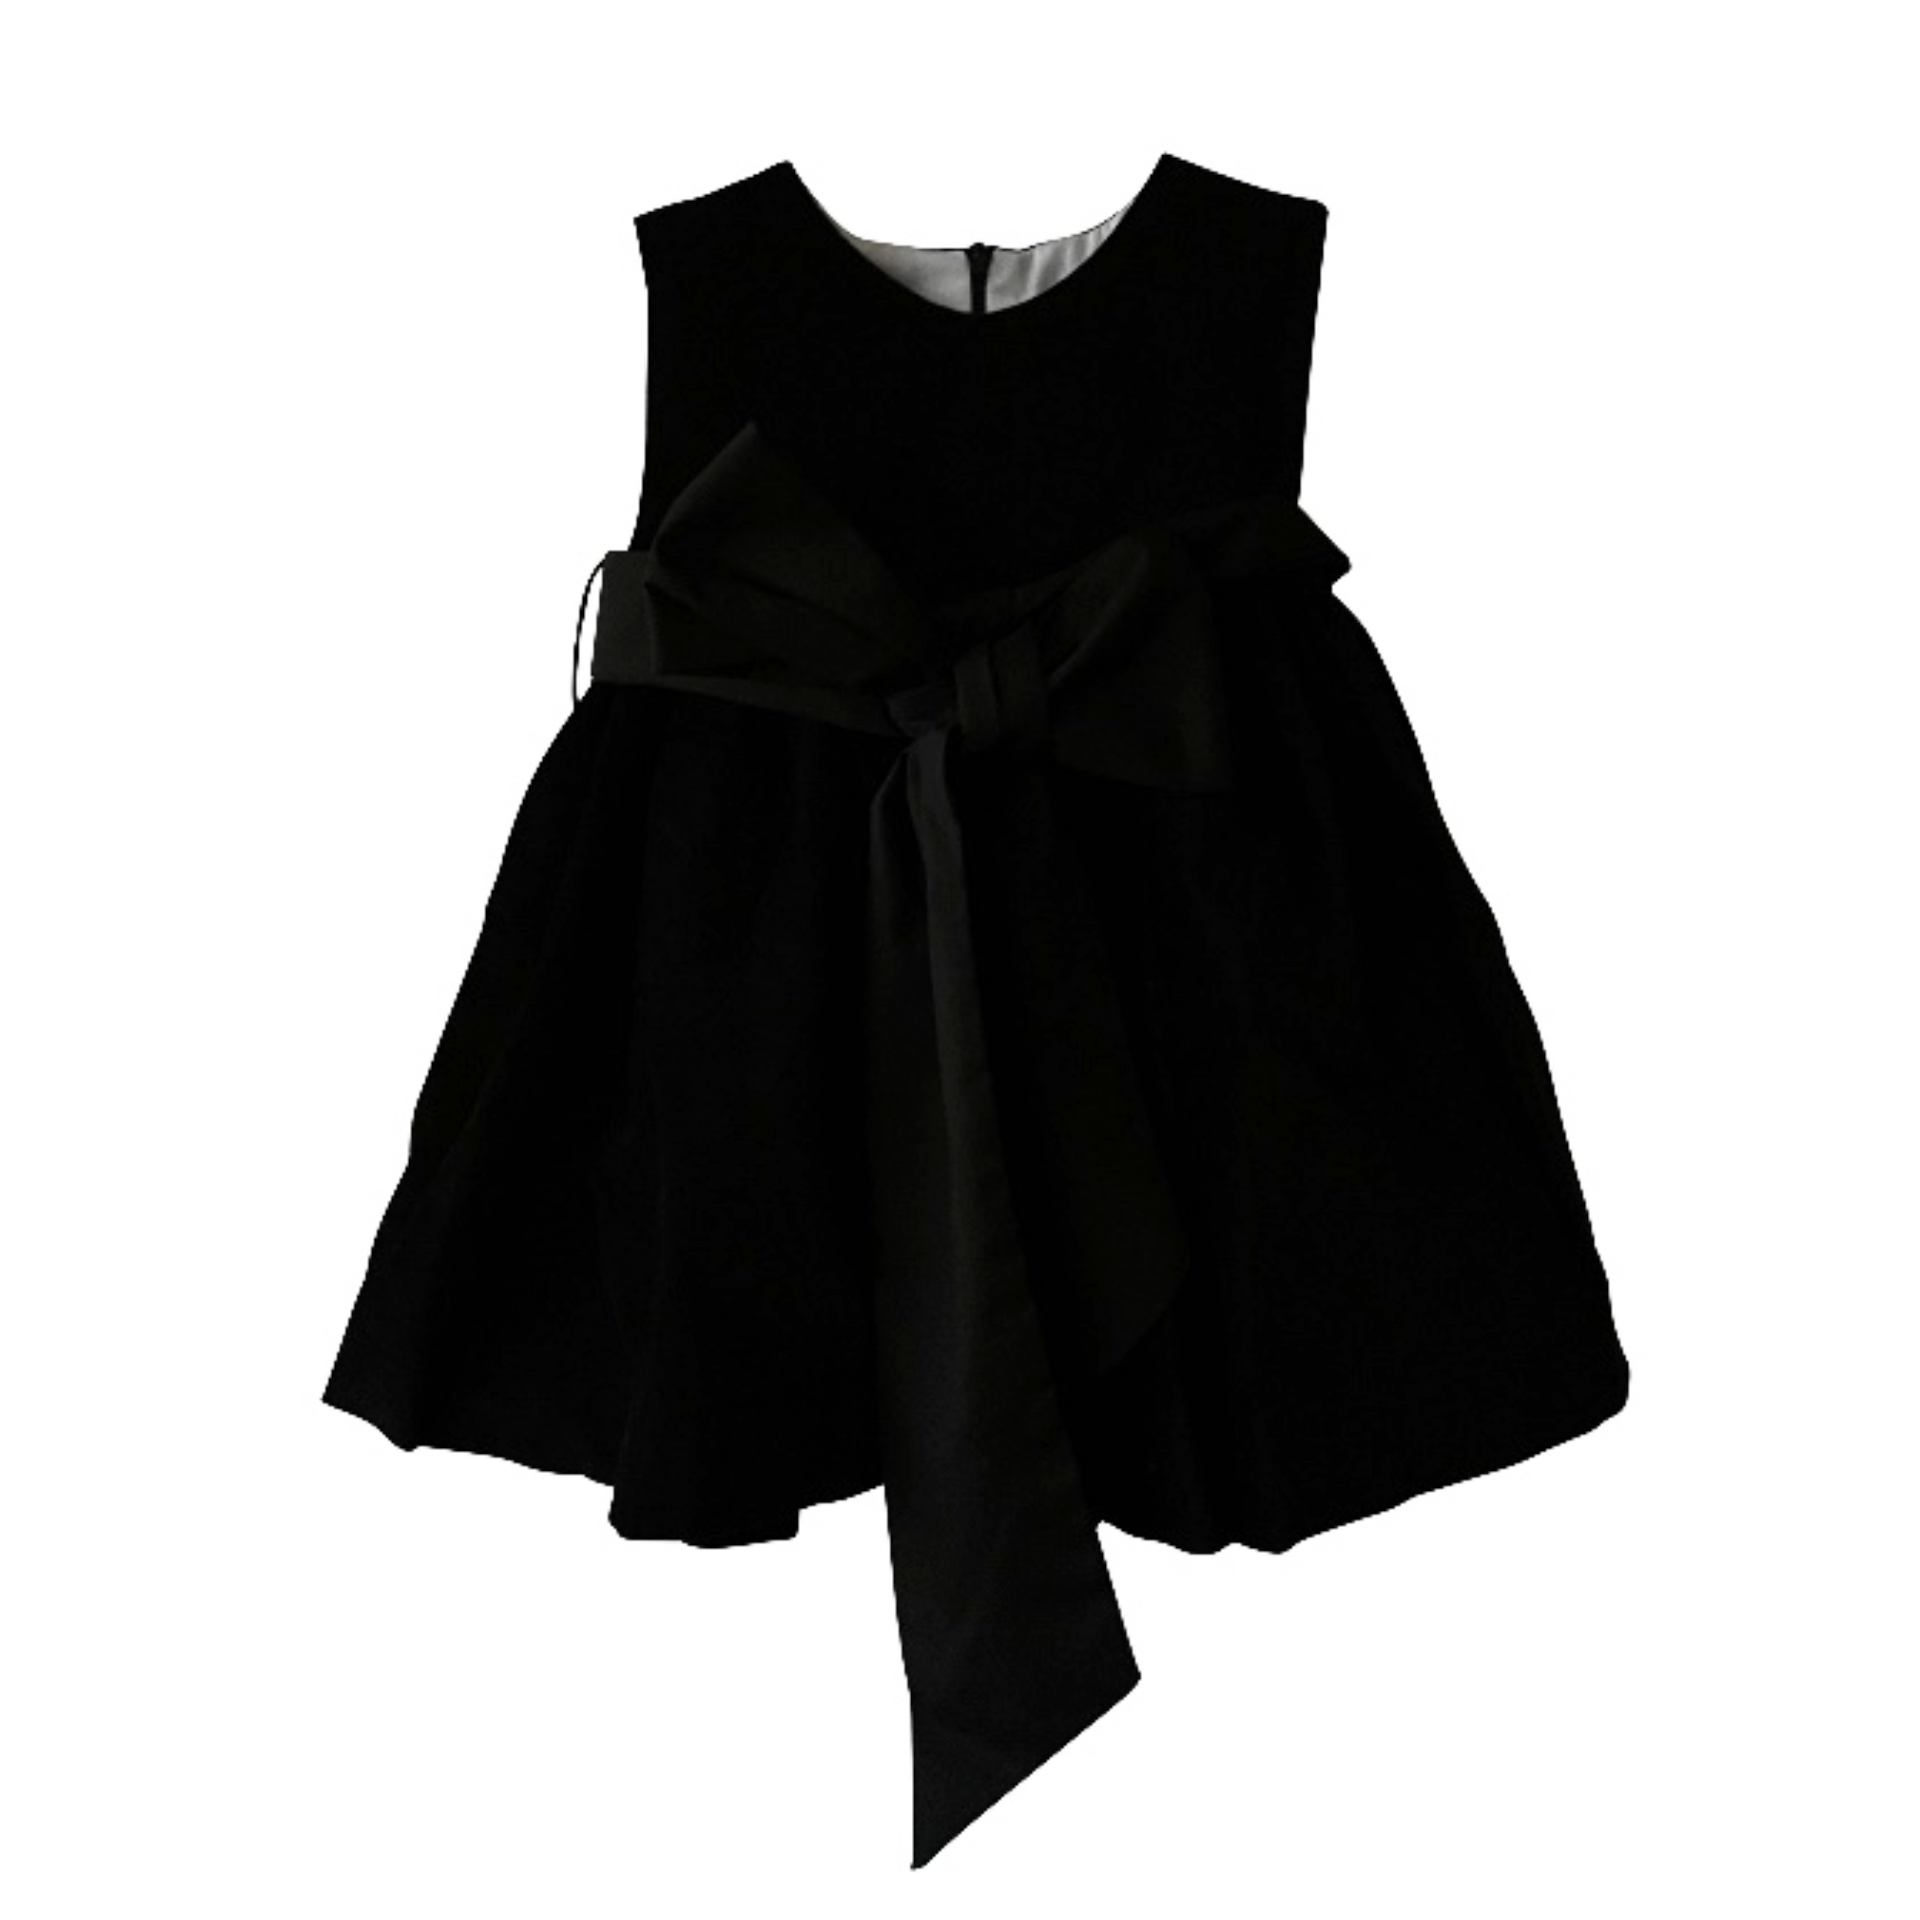 Black velvet classic dress